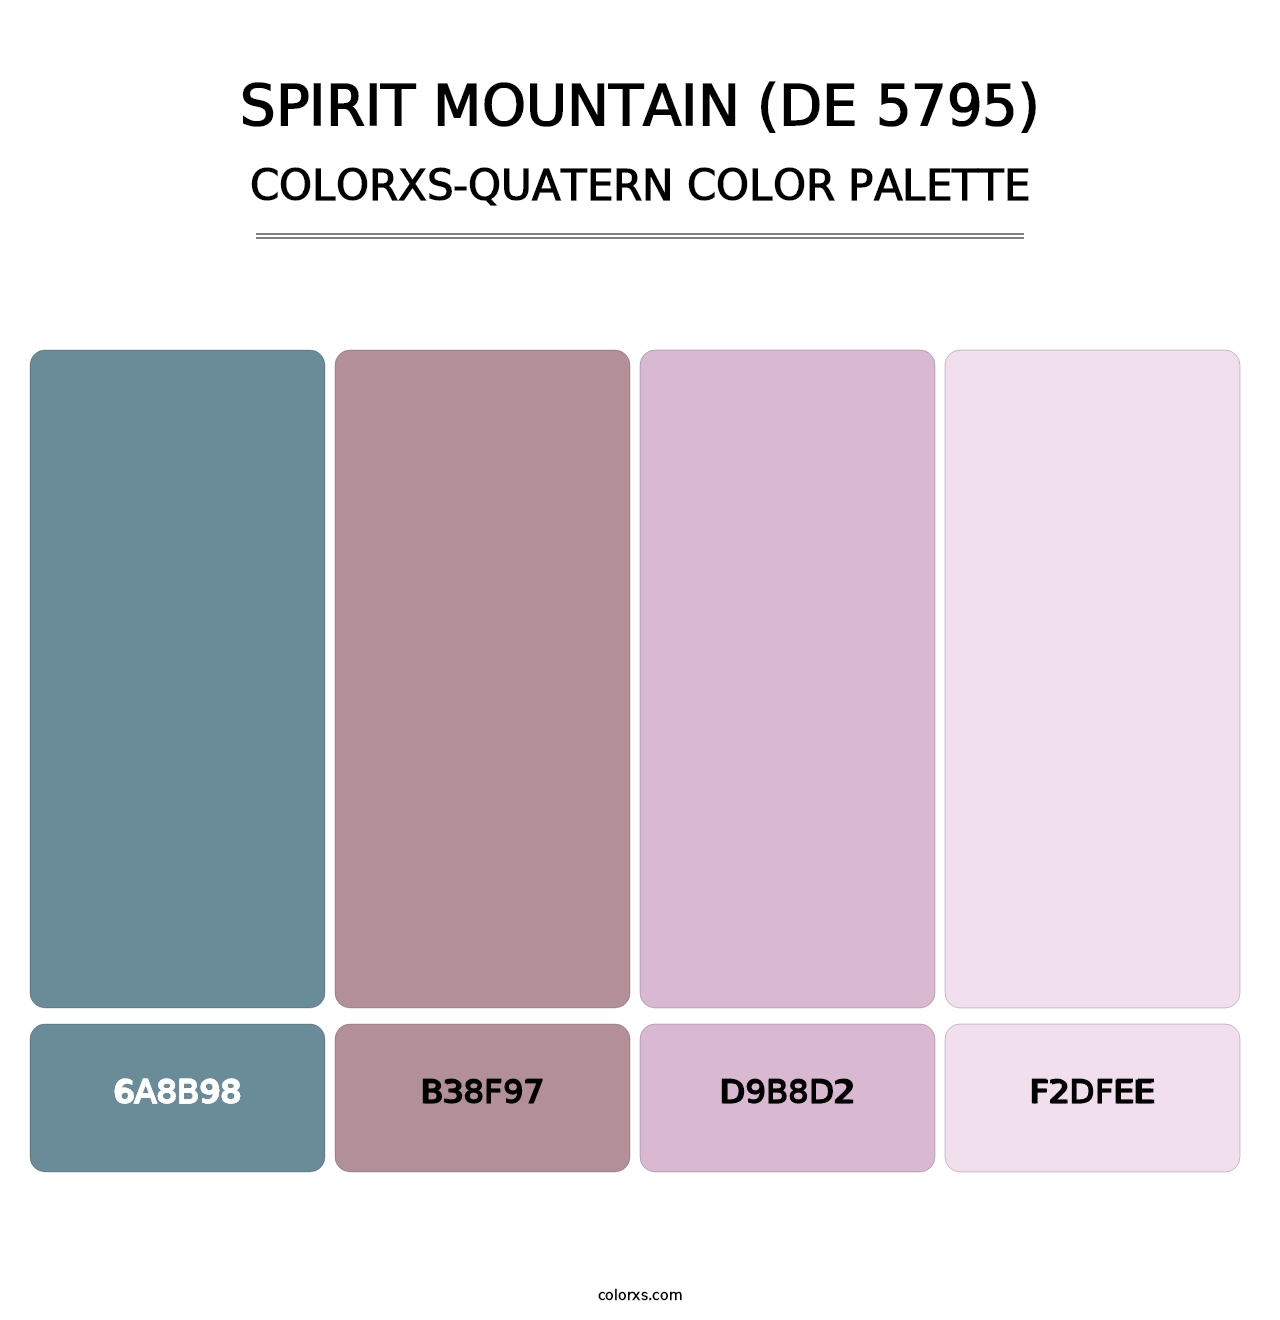 Spirit Mountain (DE 5795) - Colorxs Quatern Palette